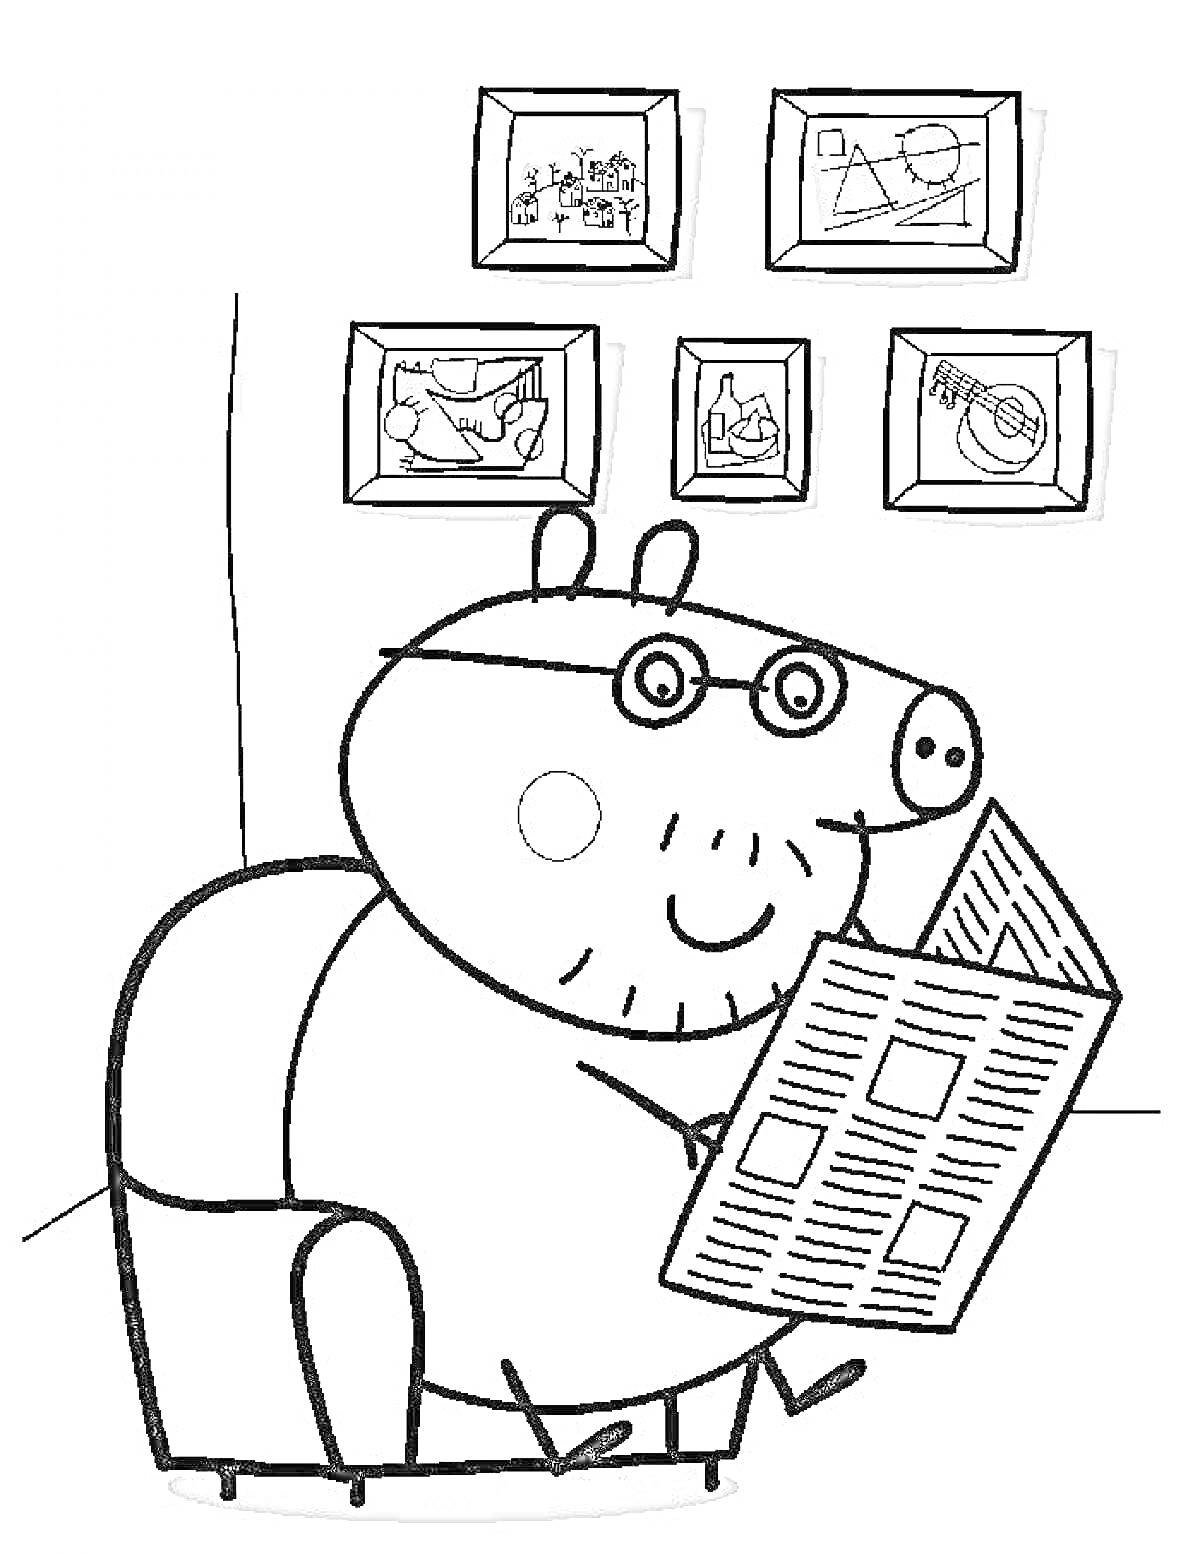 Папа Свин читает газету в кресле, на стене висят пять картин